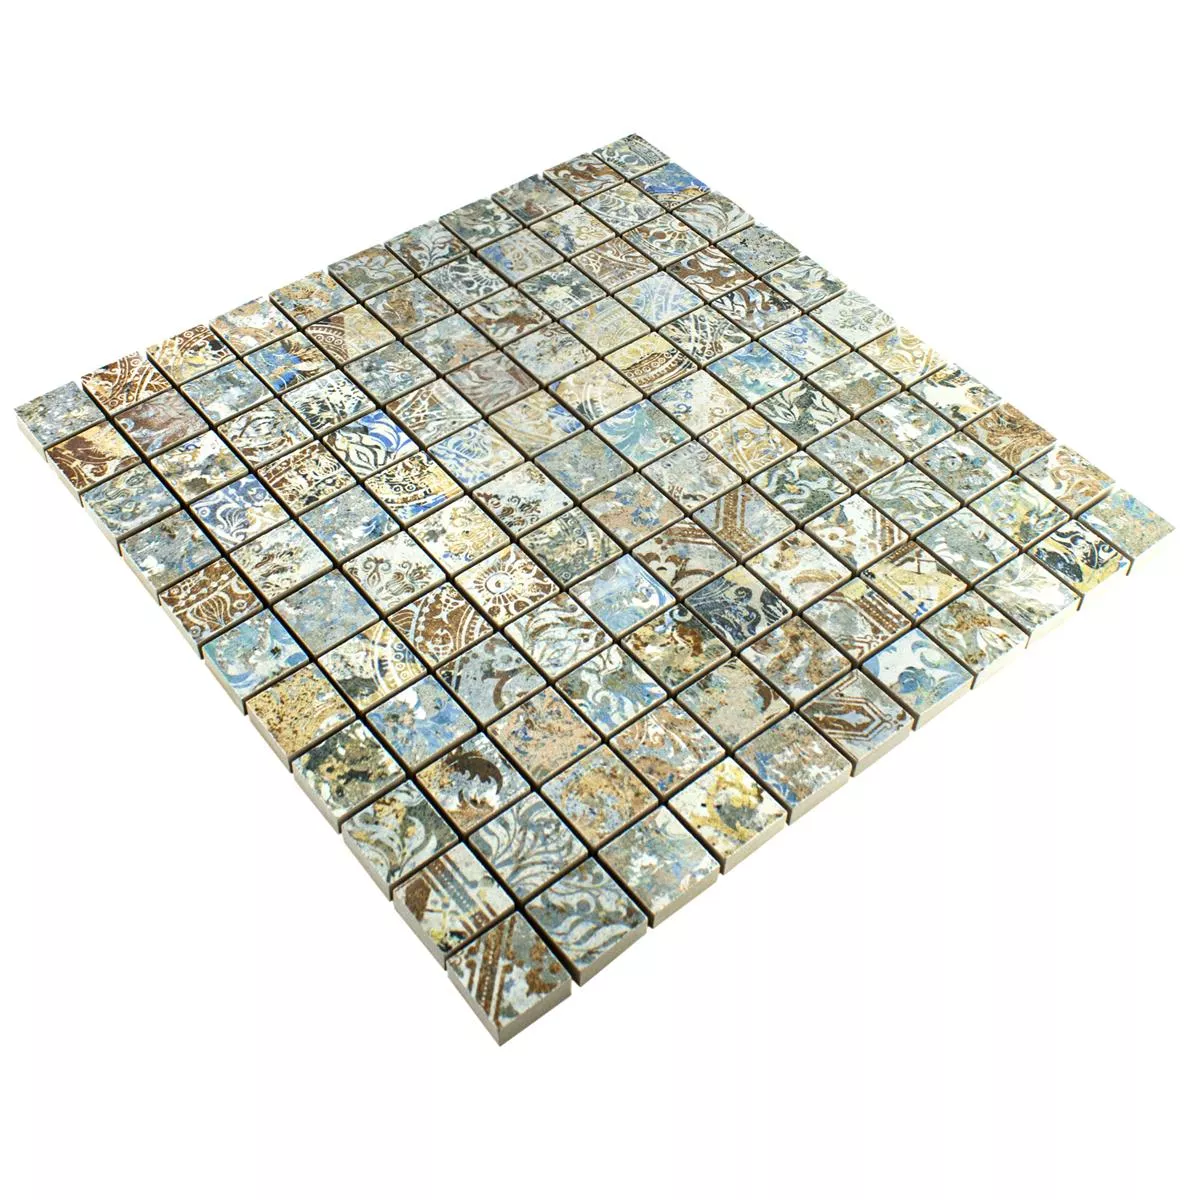 Ceramica Mosaico Piastrelle Patchwork Colorato 25x25mm